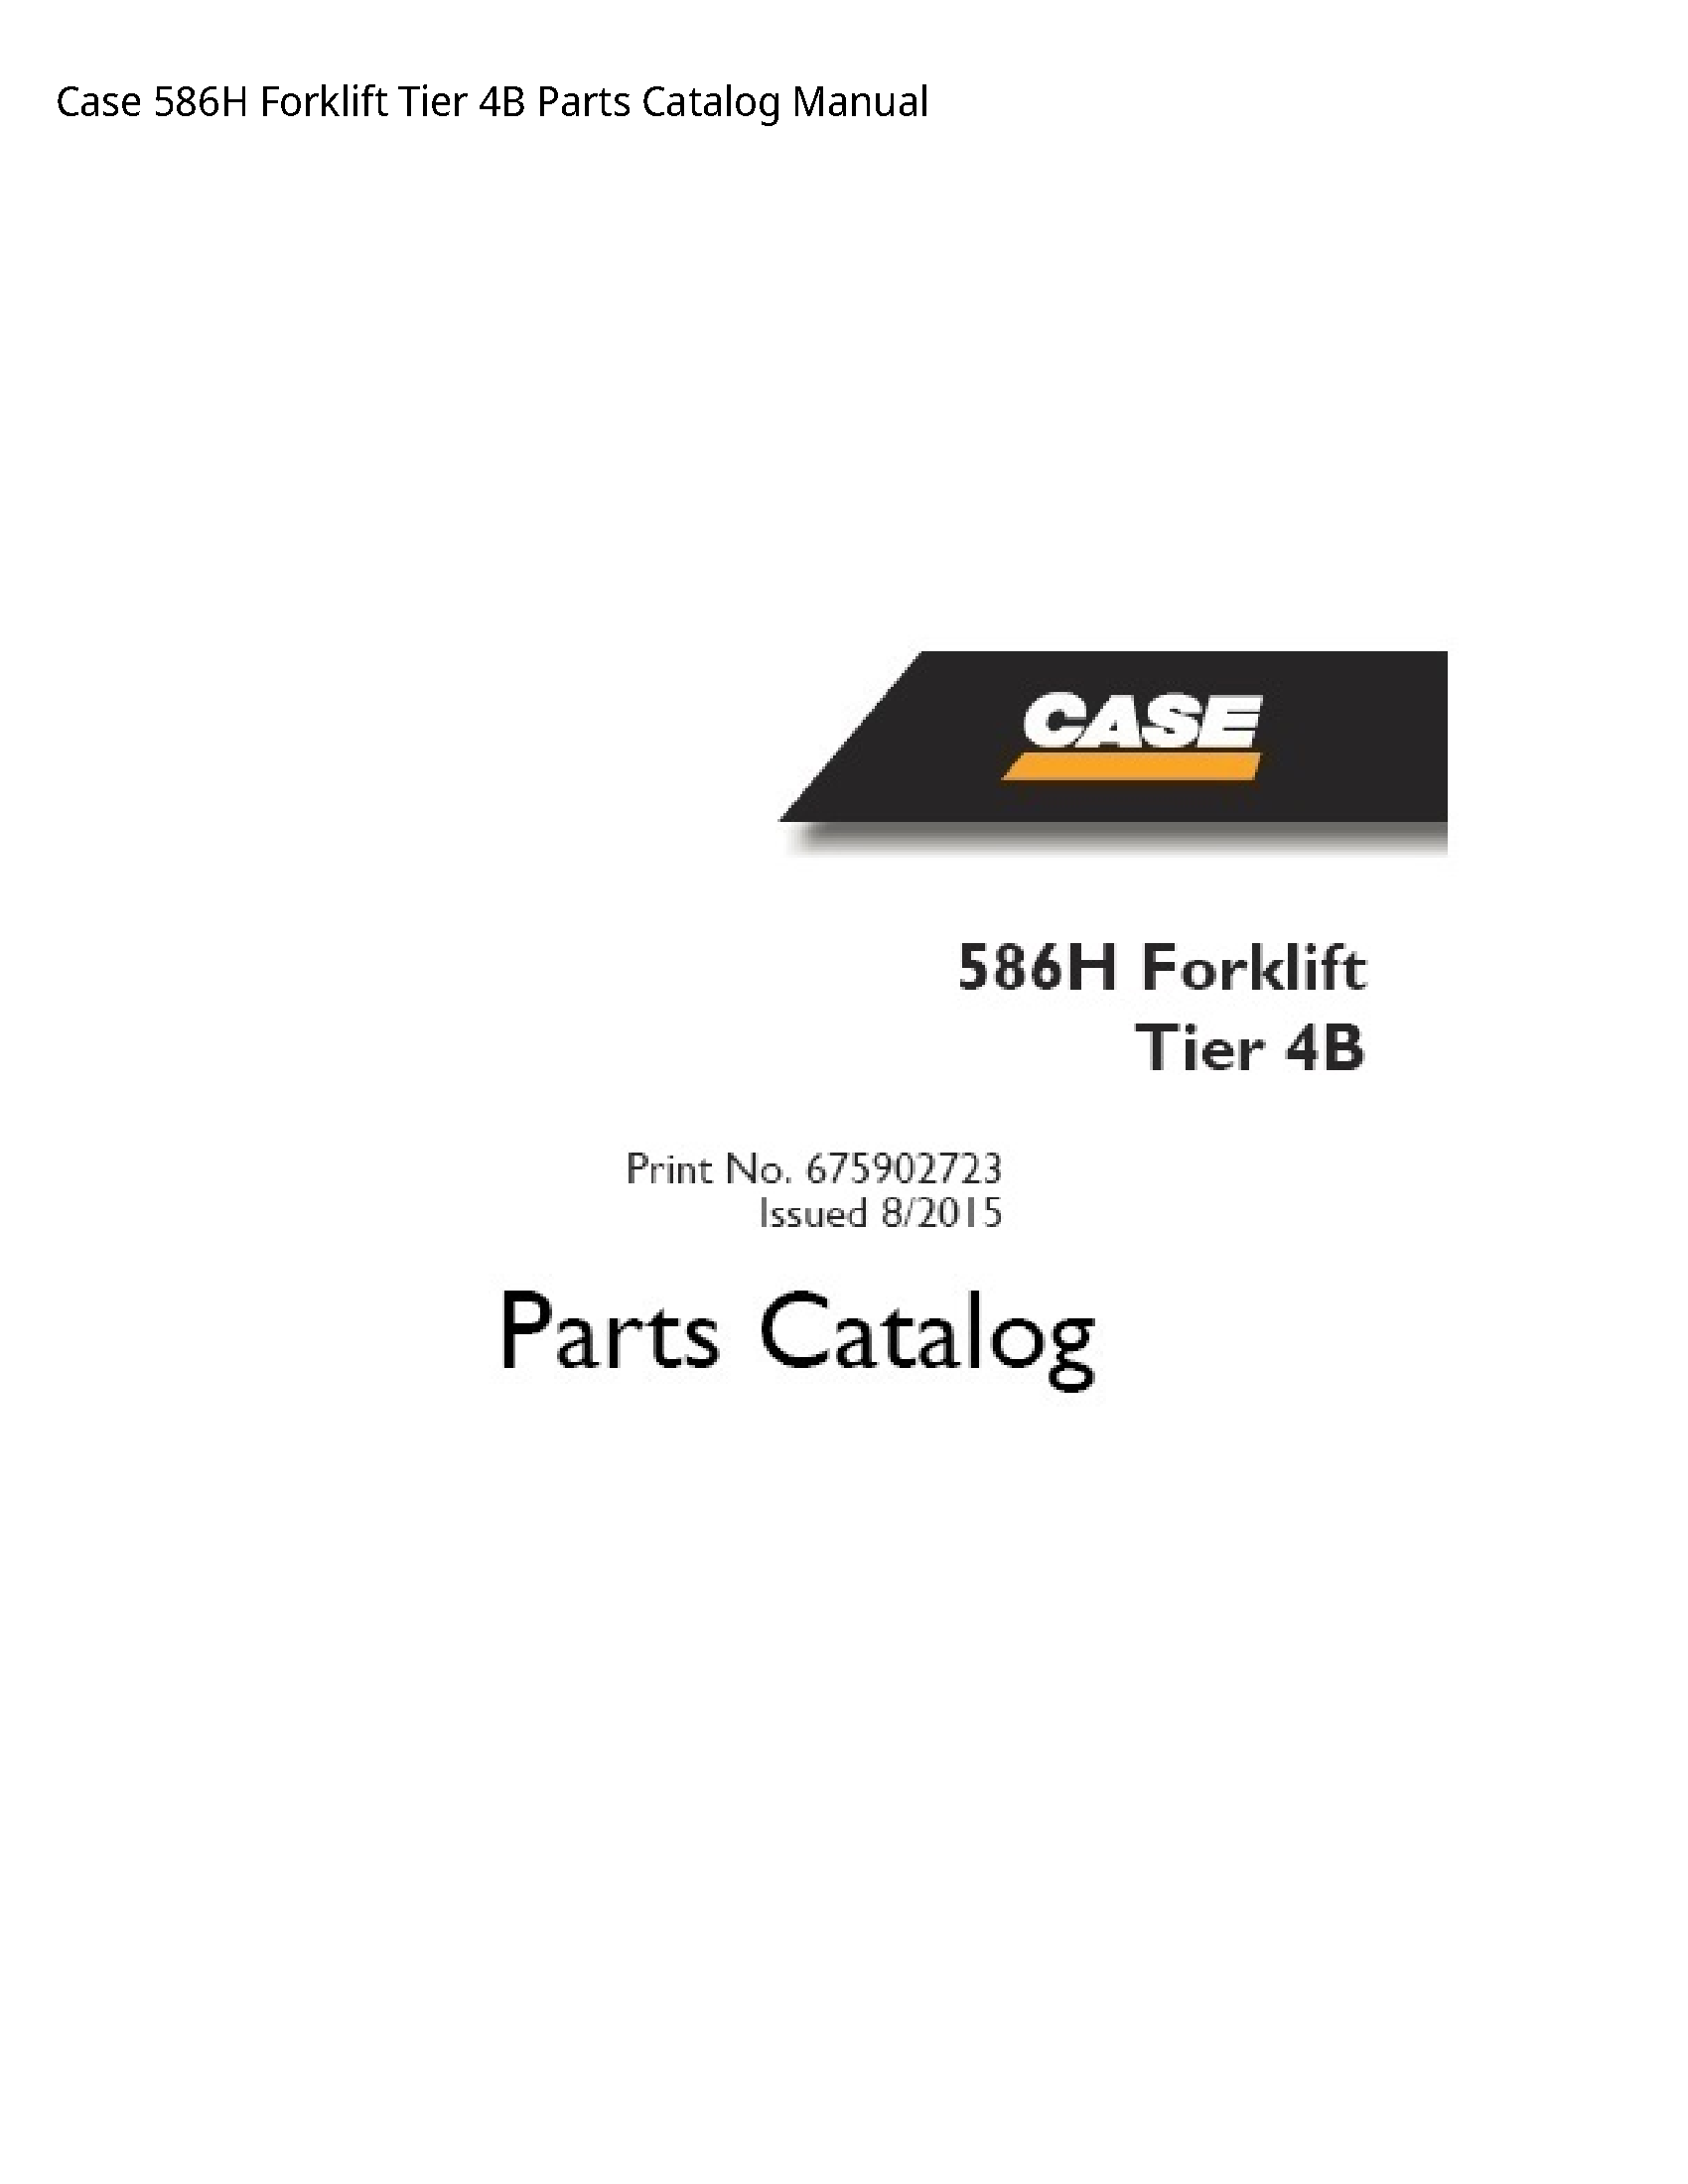 Case/Case IH 586H Forklift Tier Parts Catalog manual